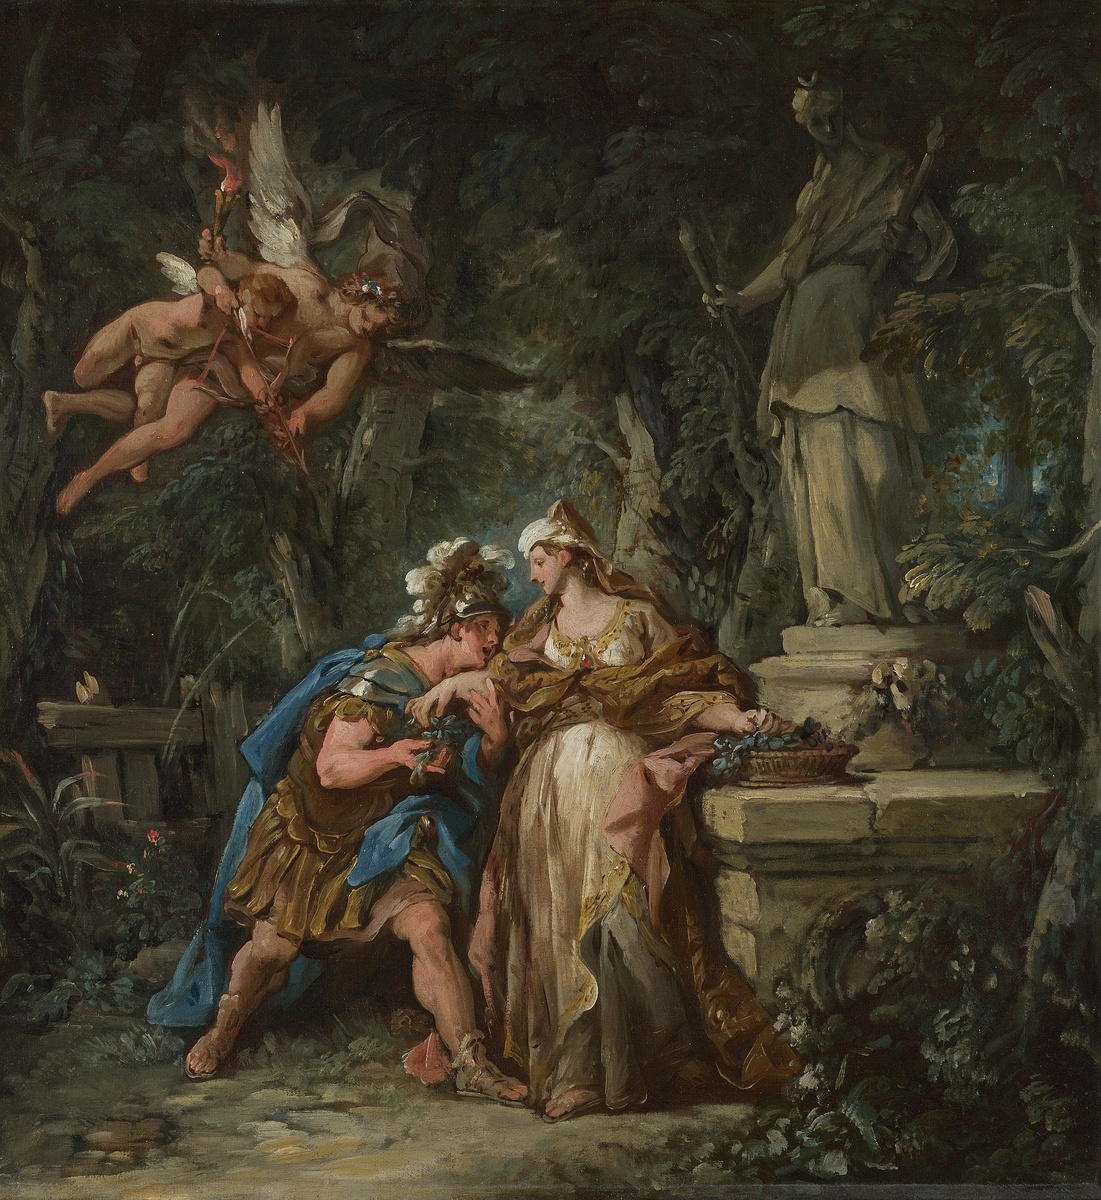 Ясон, клянущийся в вечной любви Медее, 1742-1743, Жан-Франсуа де Трой (1679-1752), Национальная галерея, Лондон